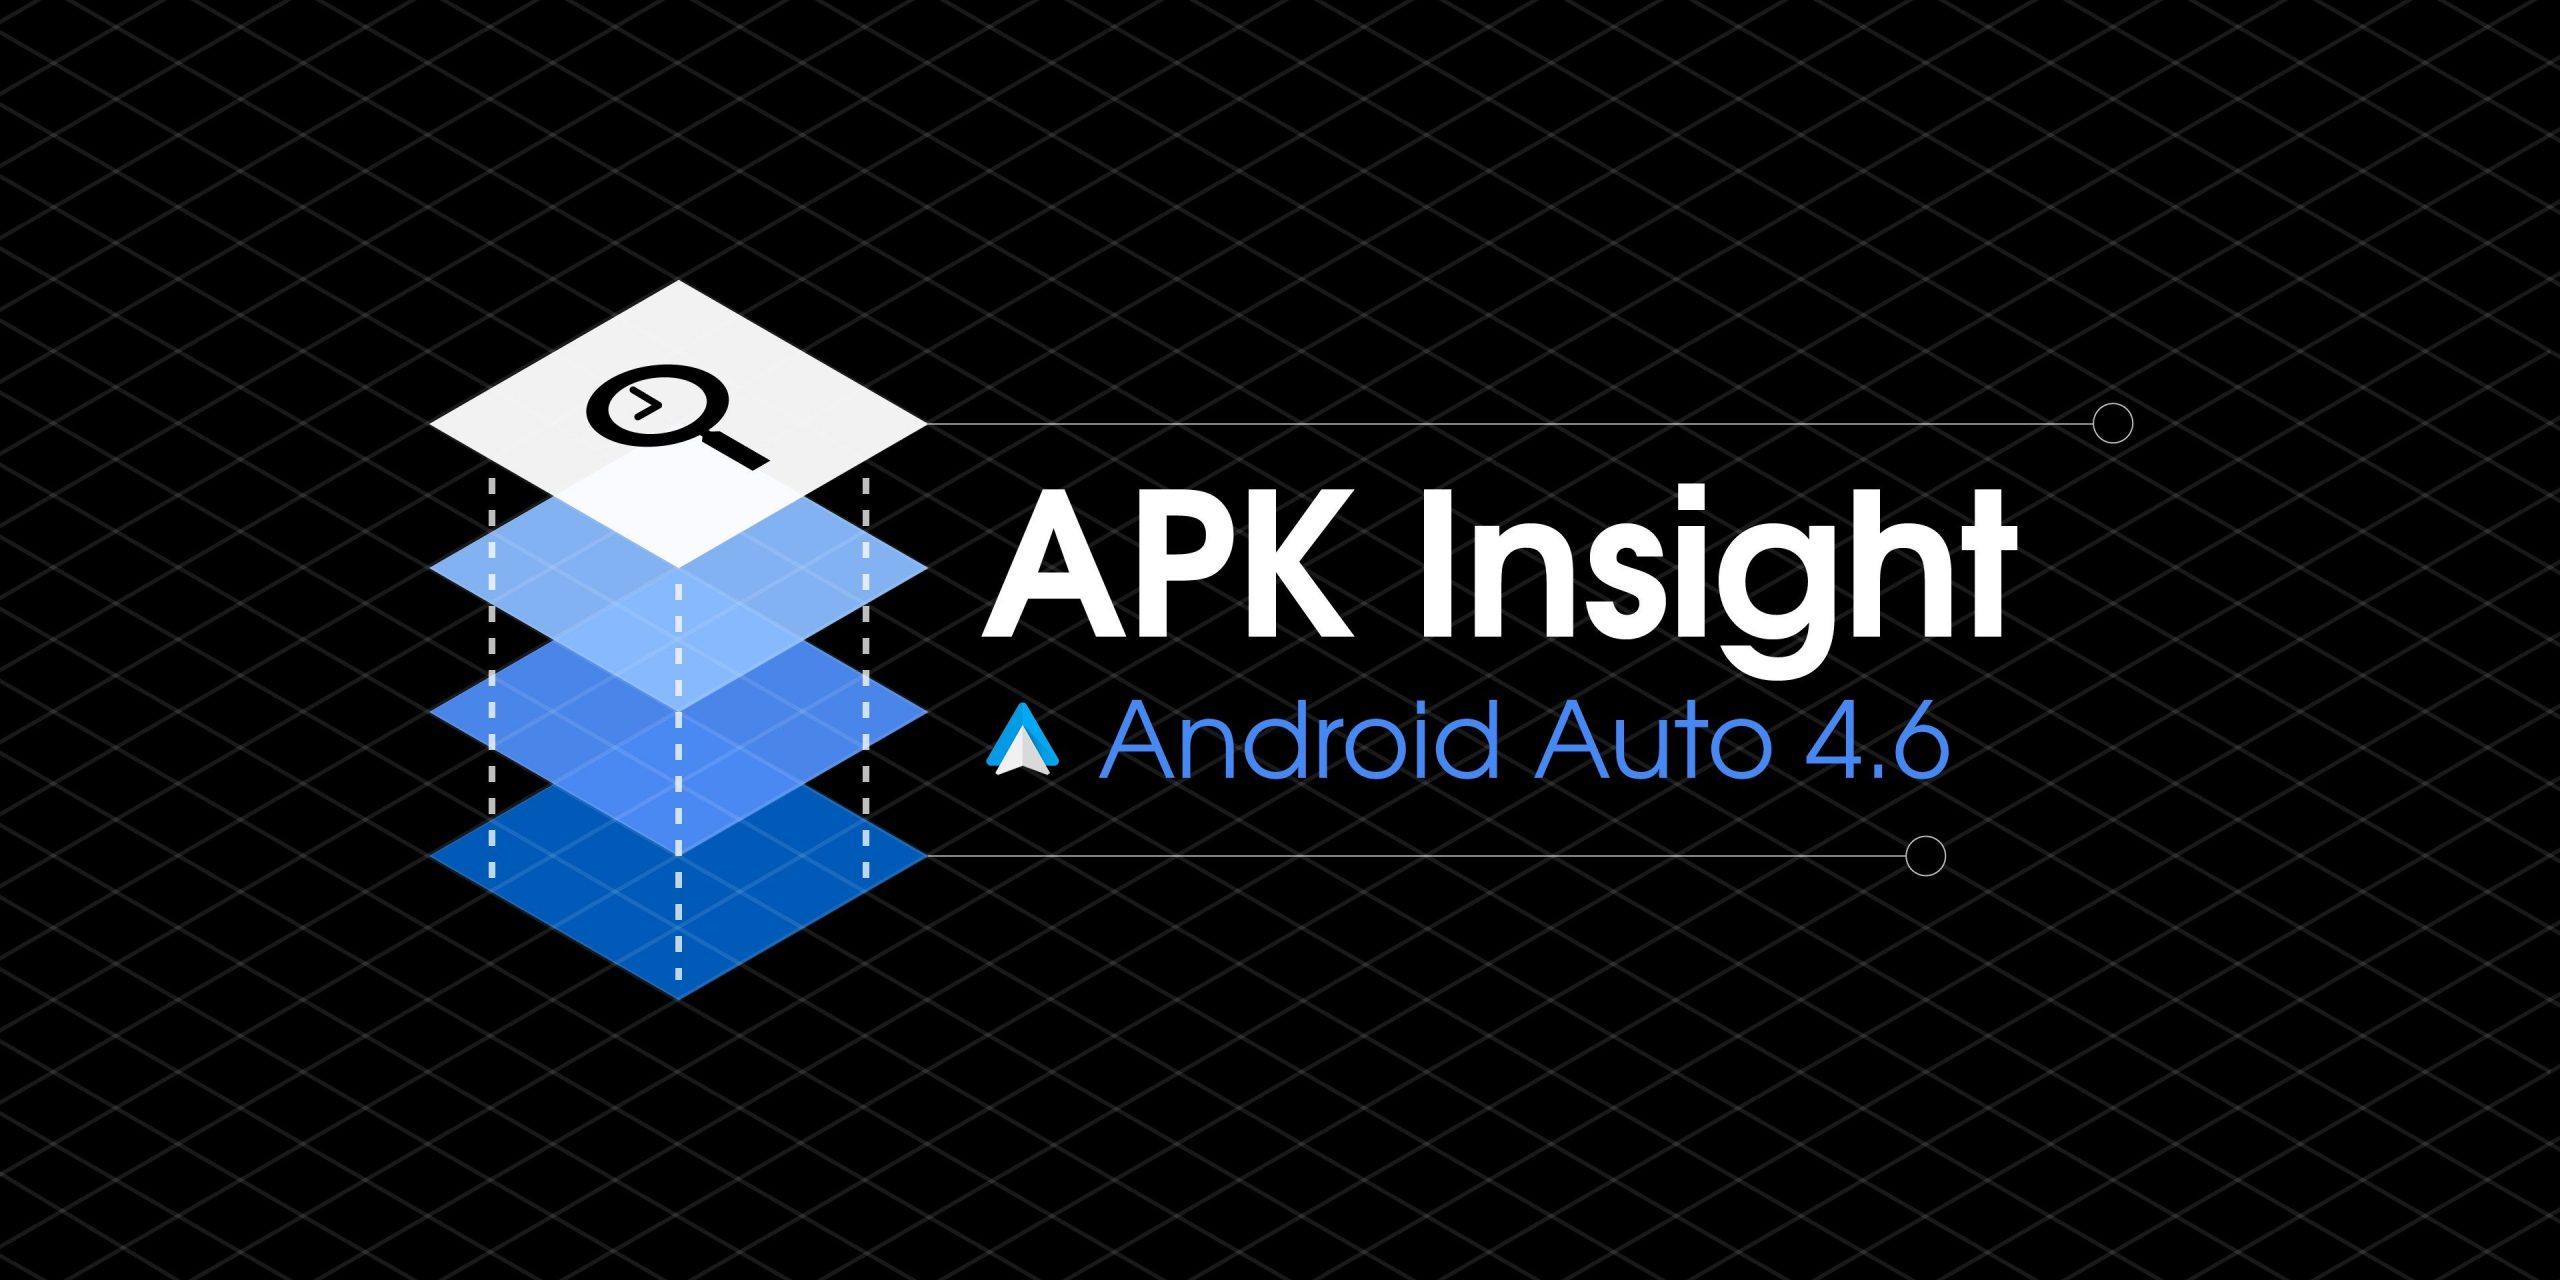 Android Auto 4.6 preparativos para matar a interface do usuário do telefone em favor do Modo de direção assistente [APK Insight]